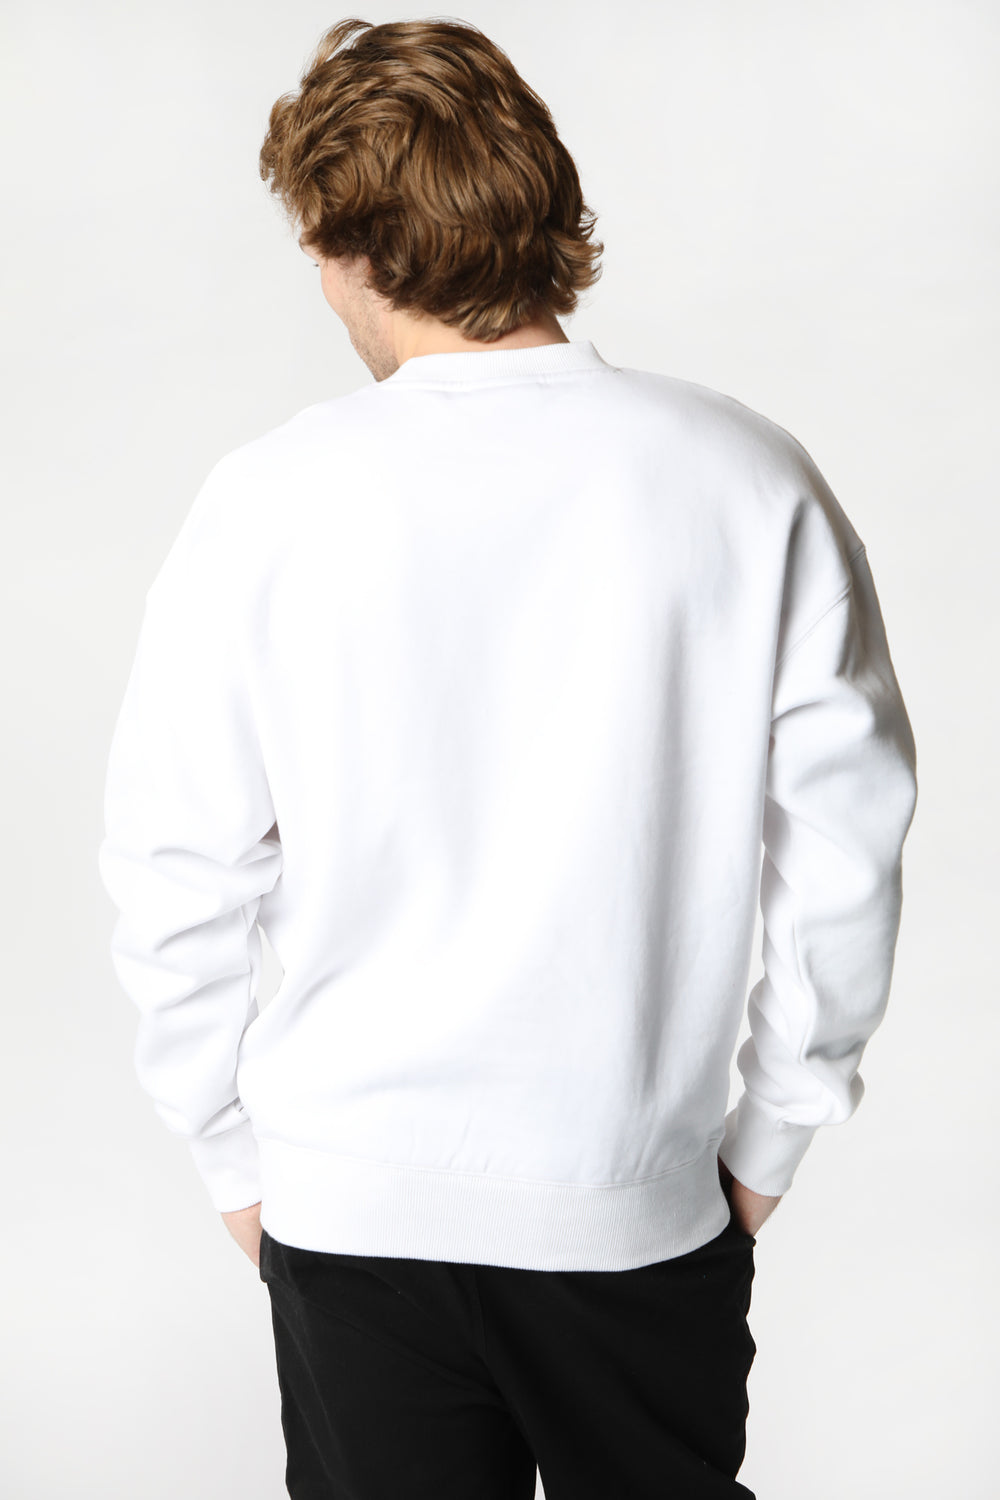 Sweatshirt Logo No Fear Homme Blanc